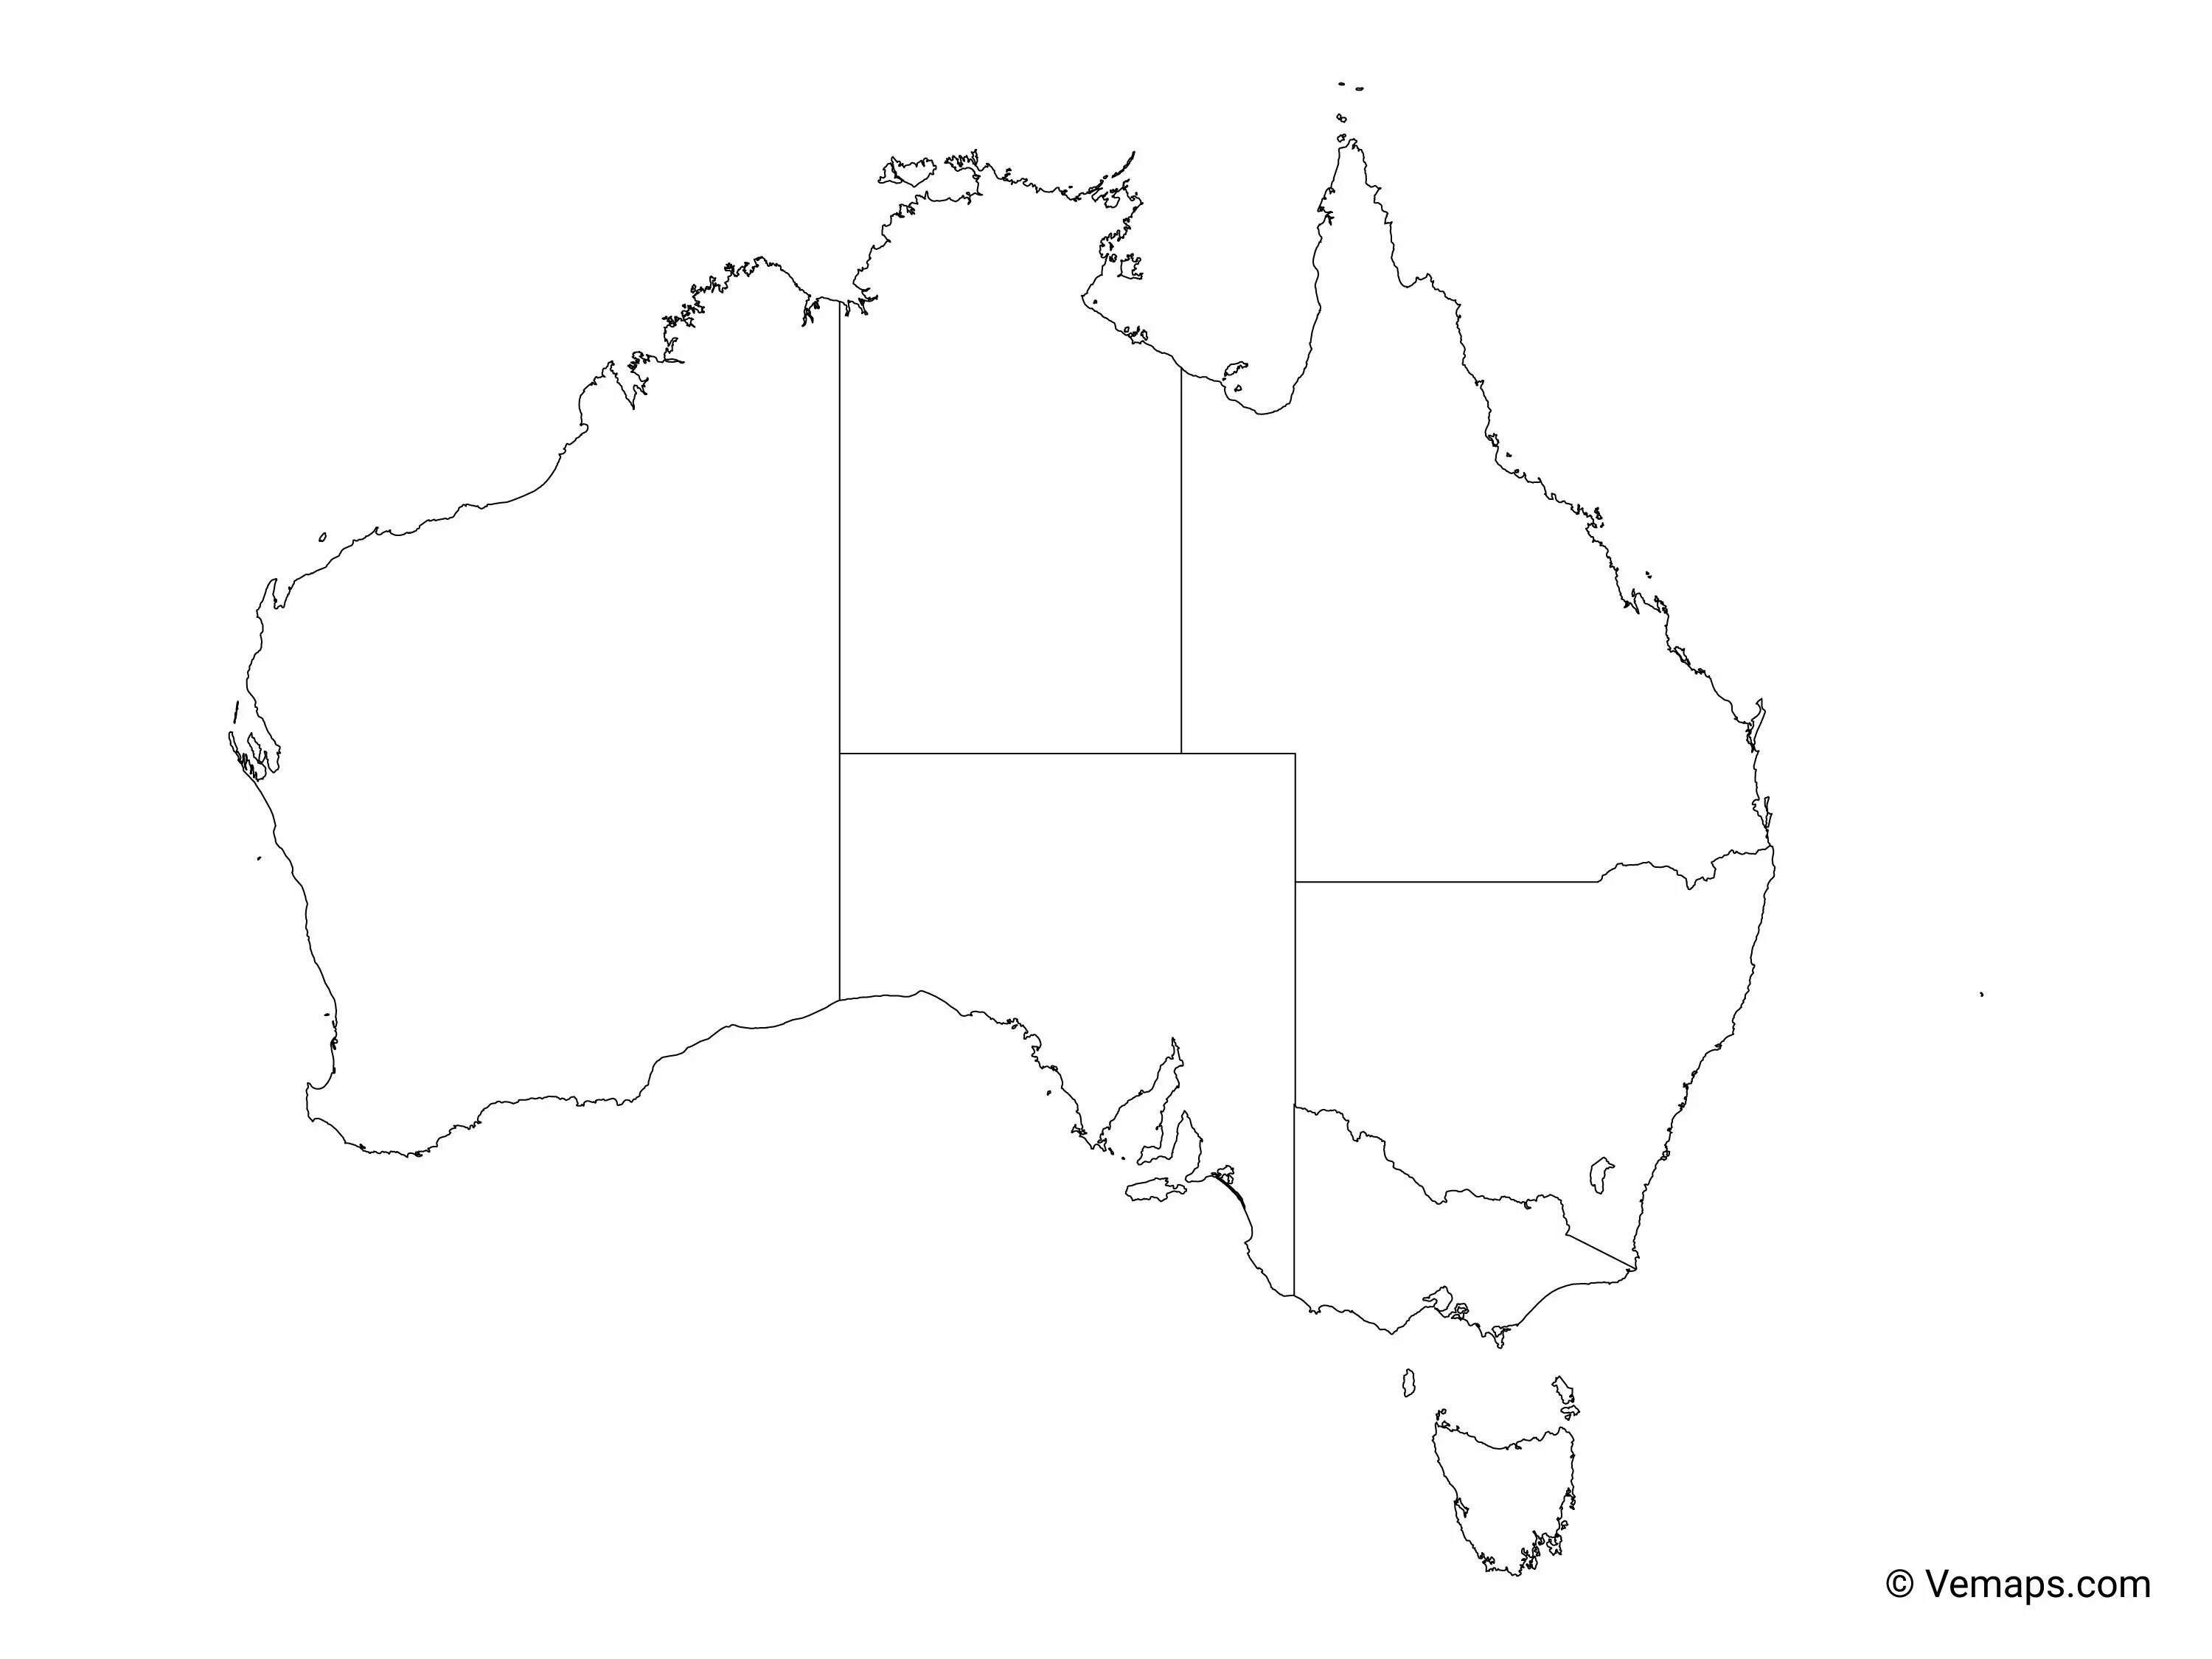 Австралия контурная карта готовая. Политическая контурная карта Австралии. Контур материка Австралия. Австралия очертания материка. Пустая контурная карта Австралии.